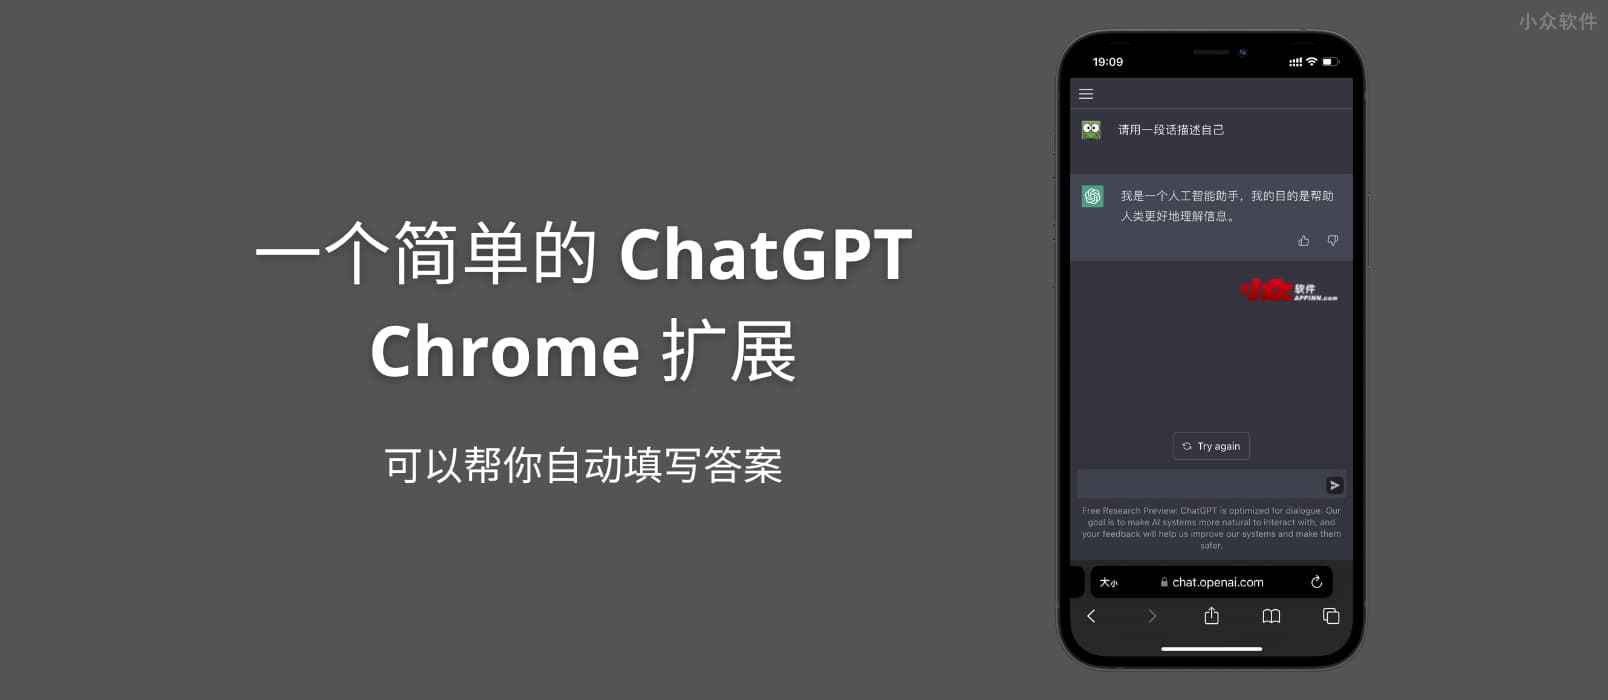 一个简单的 ChatGPT Chrome 扩展，可以帮你自动填写答案